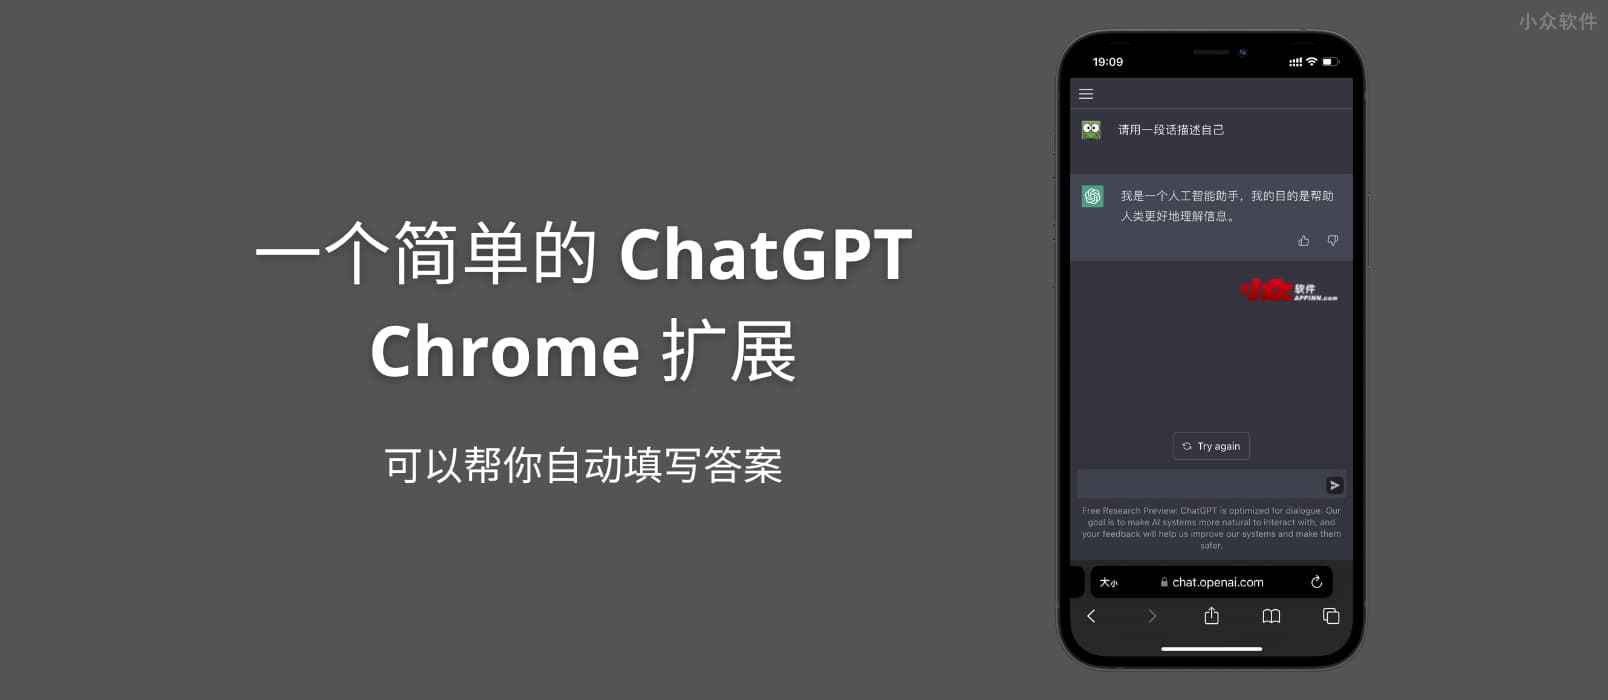 一个简单的 ChatGPT Chrome 扩展，可以帮你自动填写答案